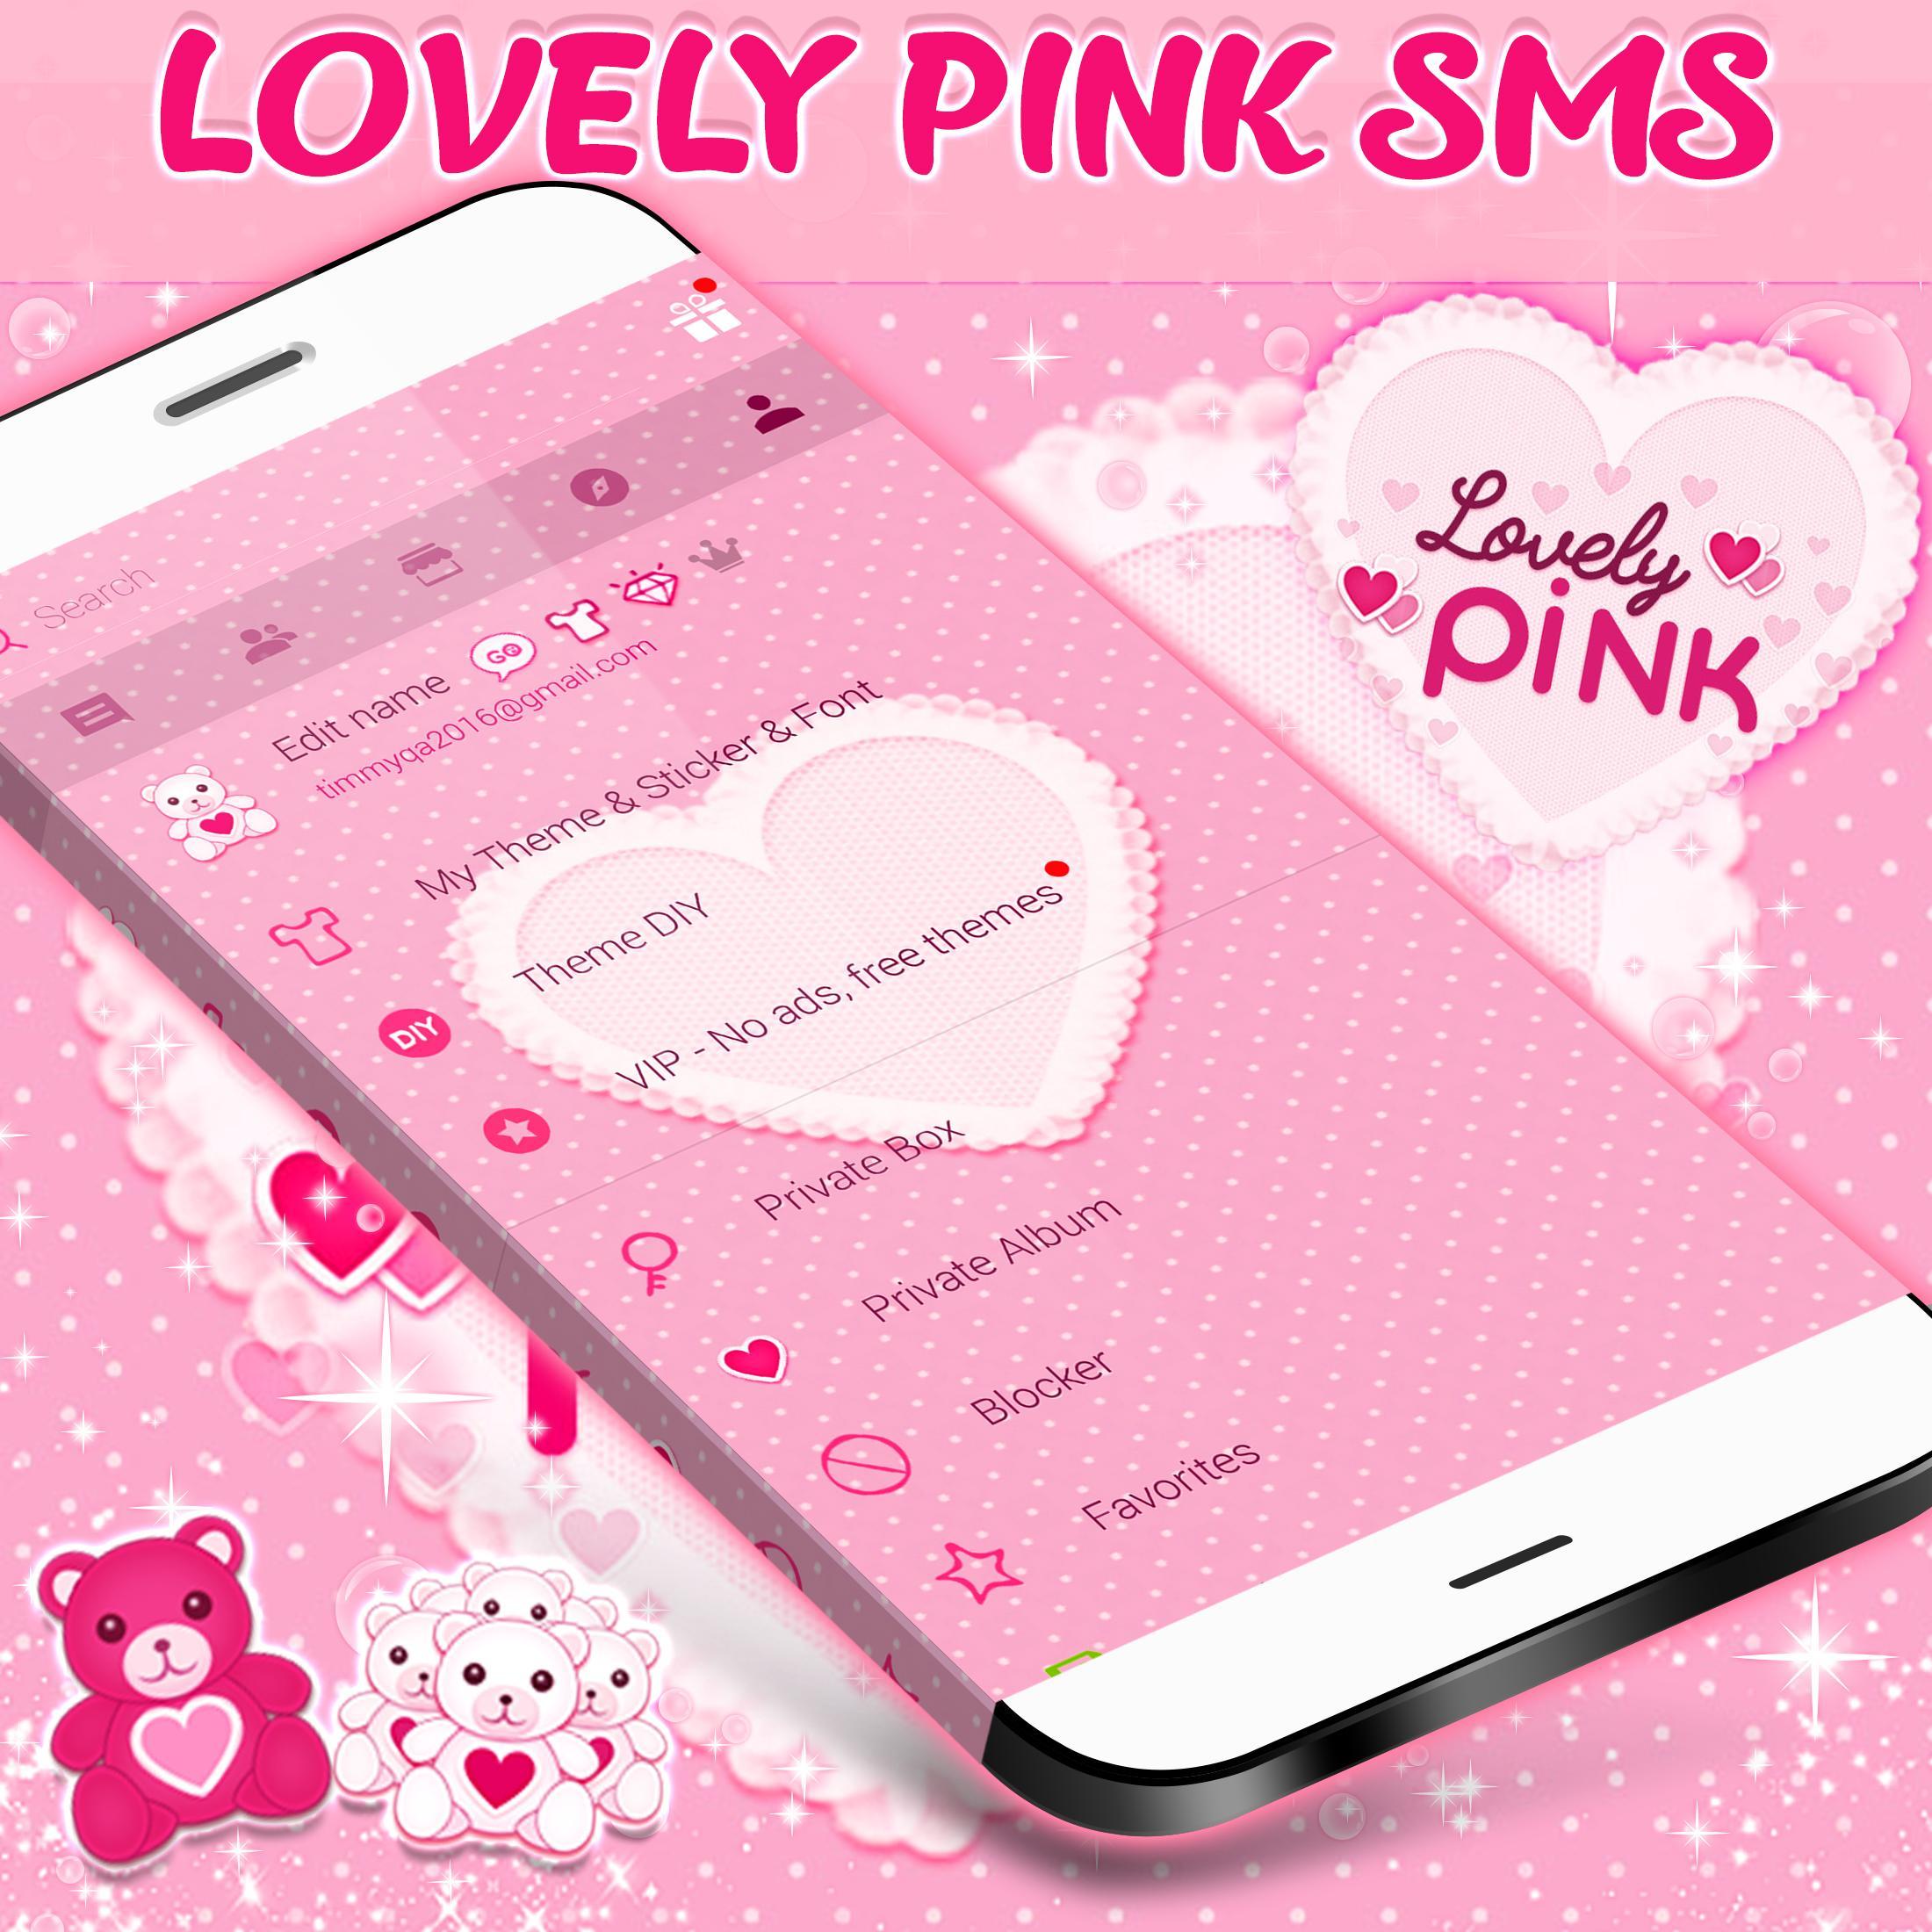 APK Chủ đề SMS với màu hồng tươi tắn và hiện đại, sẽ làm cho màn hình điện thoại Android của bạn trở nên thú vị hơn bao giờ hết! Hãy khám phá ứng dụng này cùng hình ảnh liên quan.